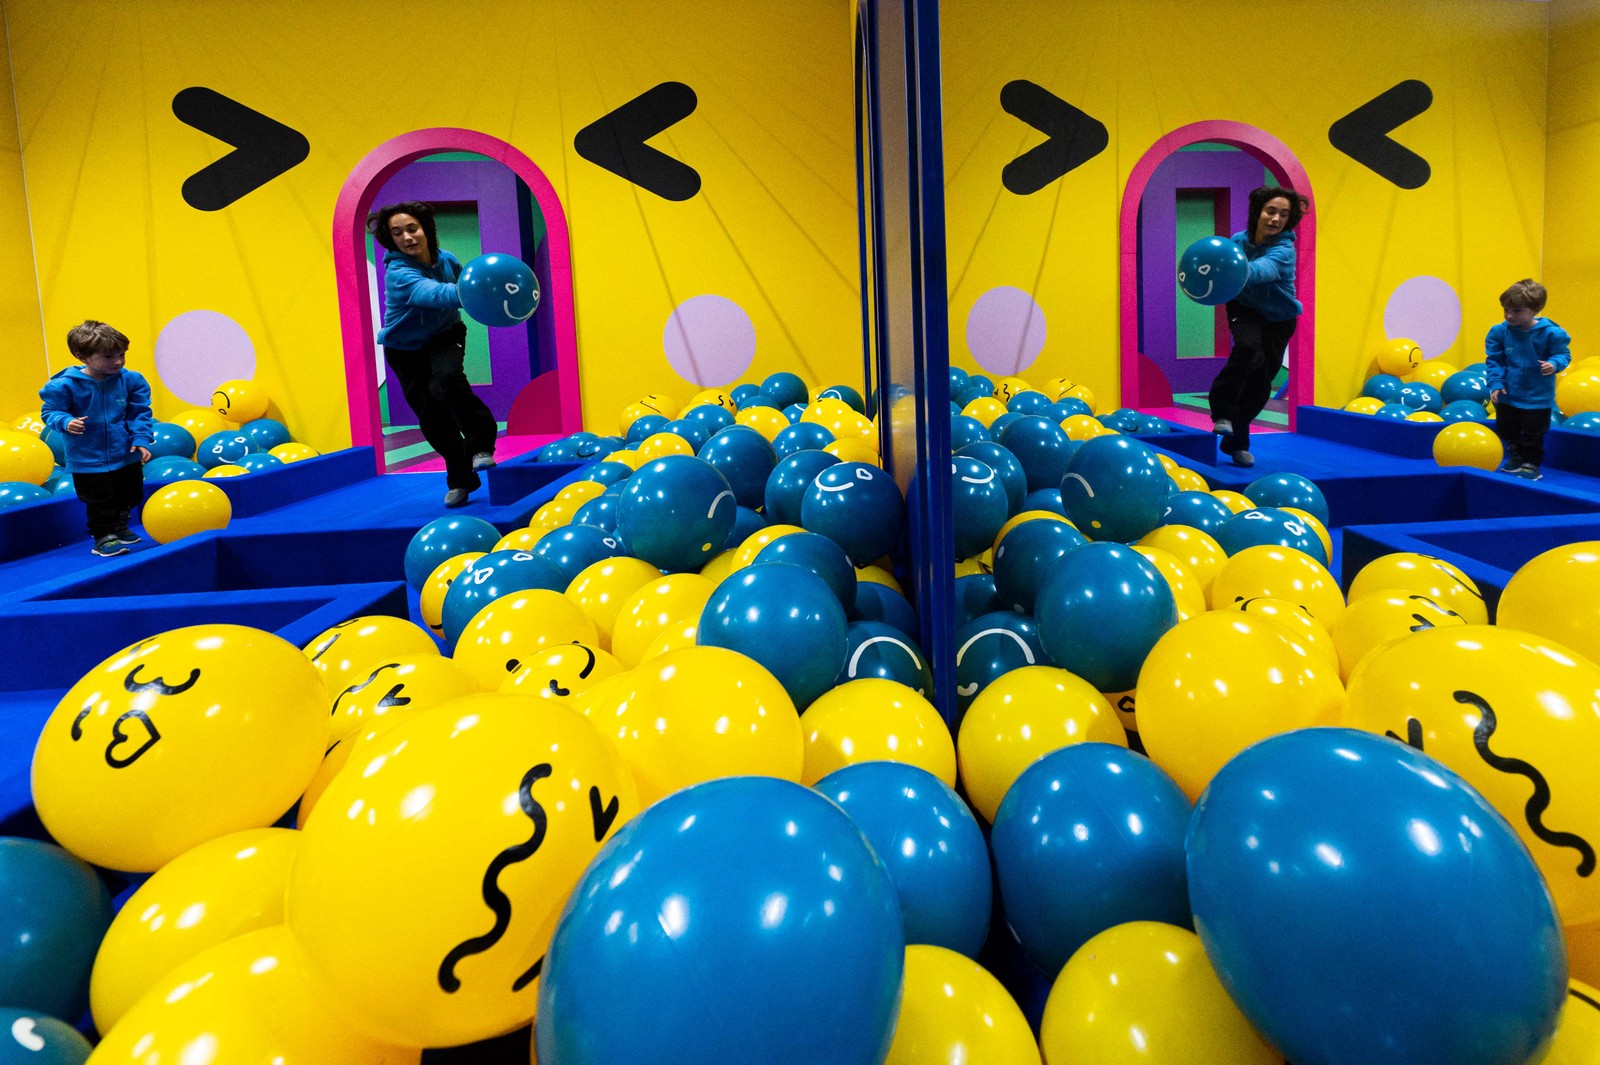 Crianças brincam na "sala emoji", cheia de bolas azuis e amarelas que representam as conhecidas carinhas sorridentesAFP